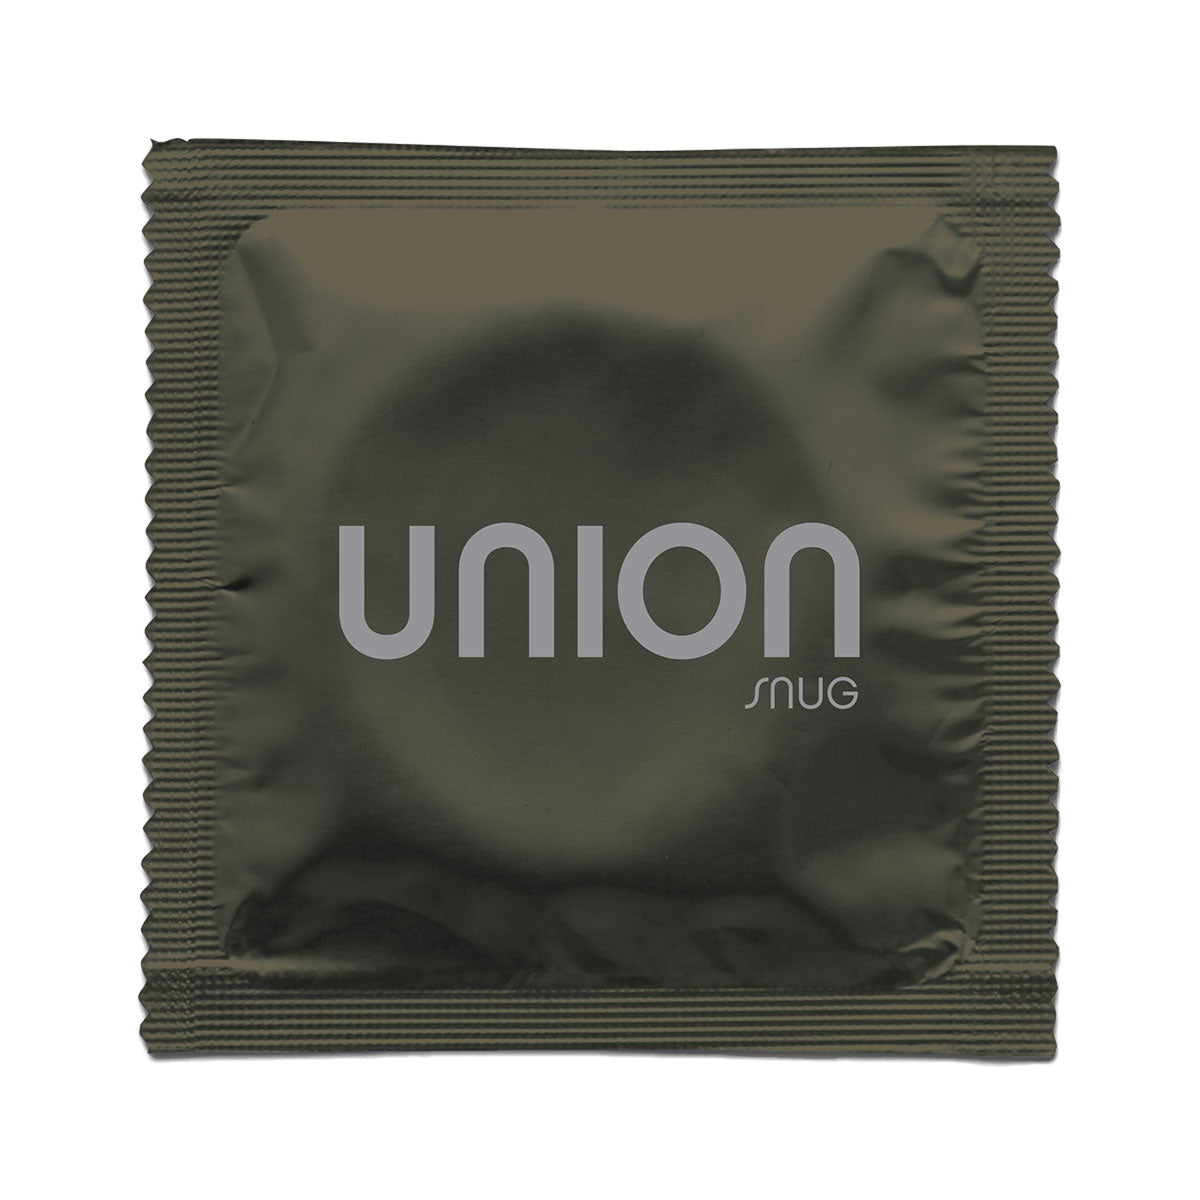 Union Snug Condoms 12pk Intimates Adult Boutique